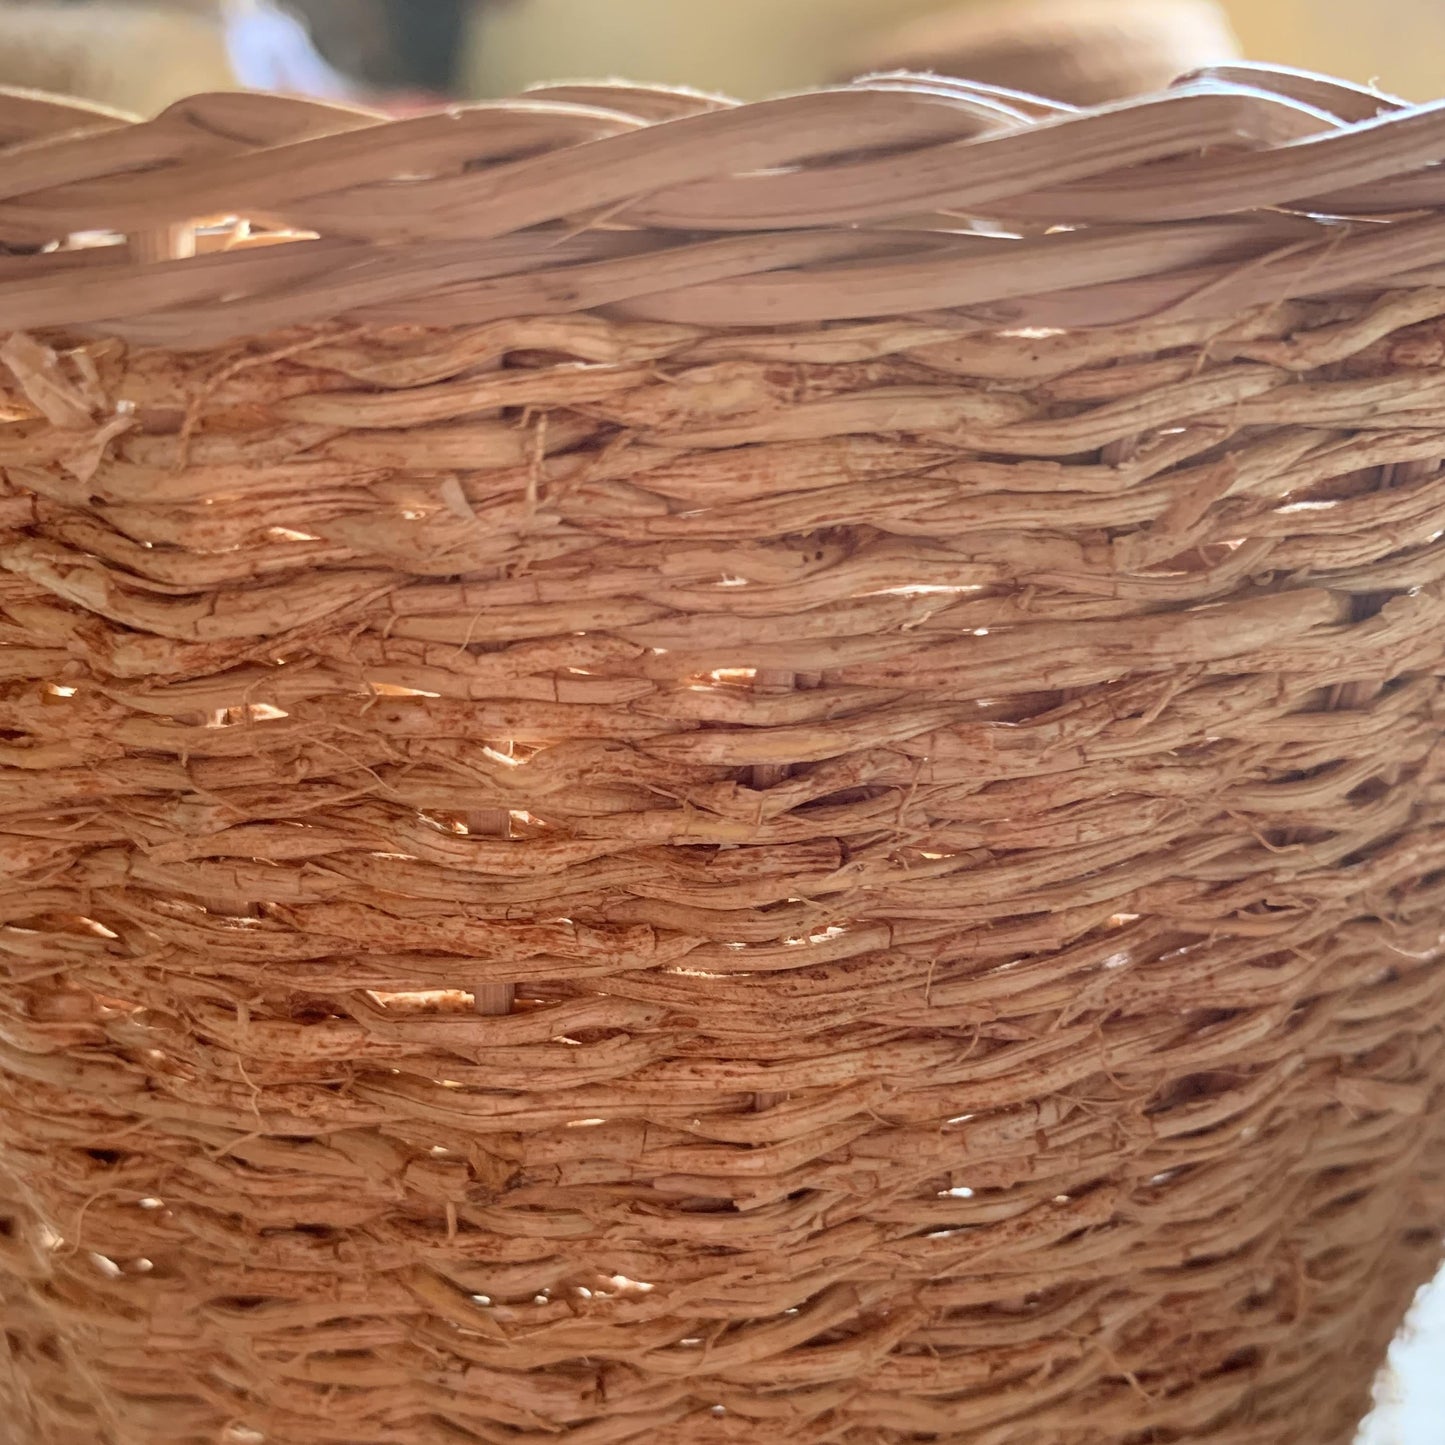 Madagascar, Tahiana Creation, Basket Weaving